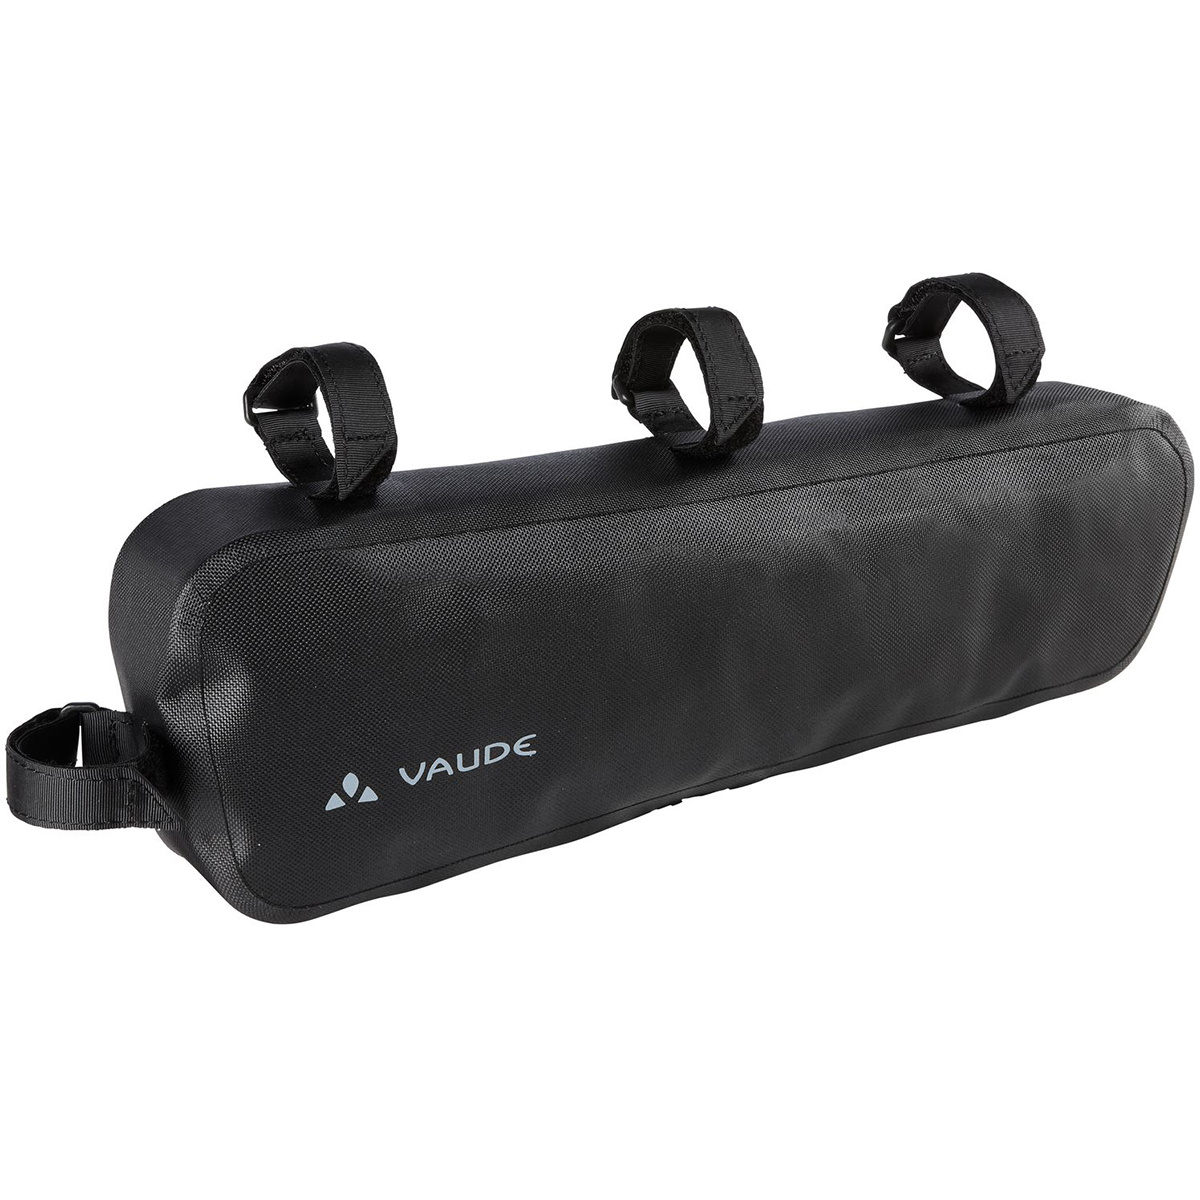 Vaude Aqua Fahrradtasche (Größe One Size, schwarz)